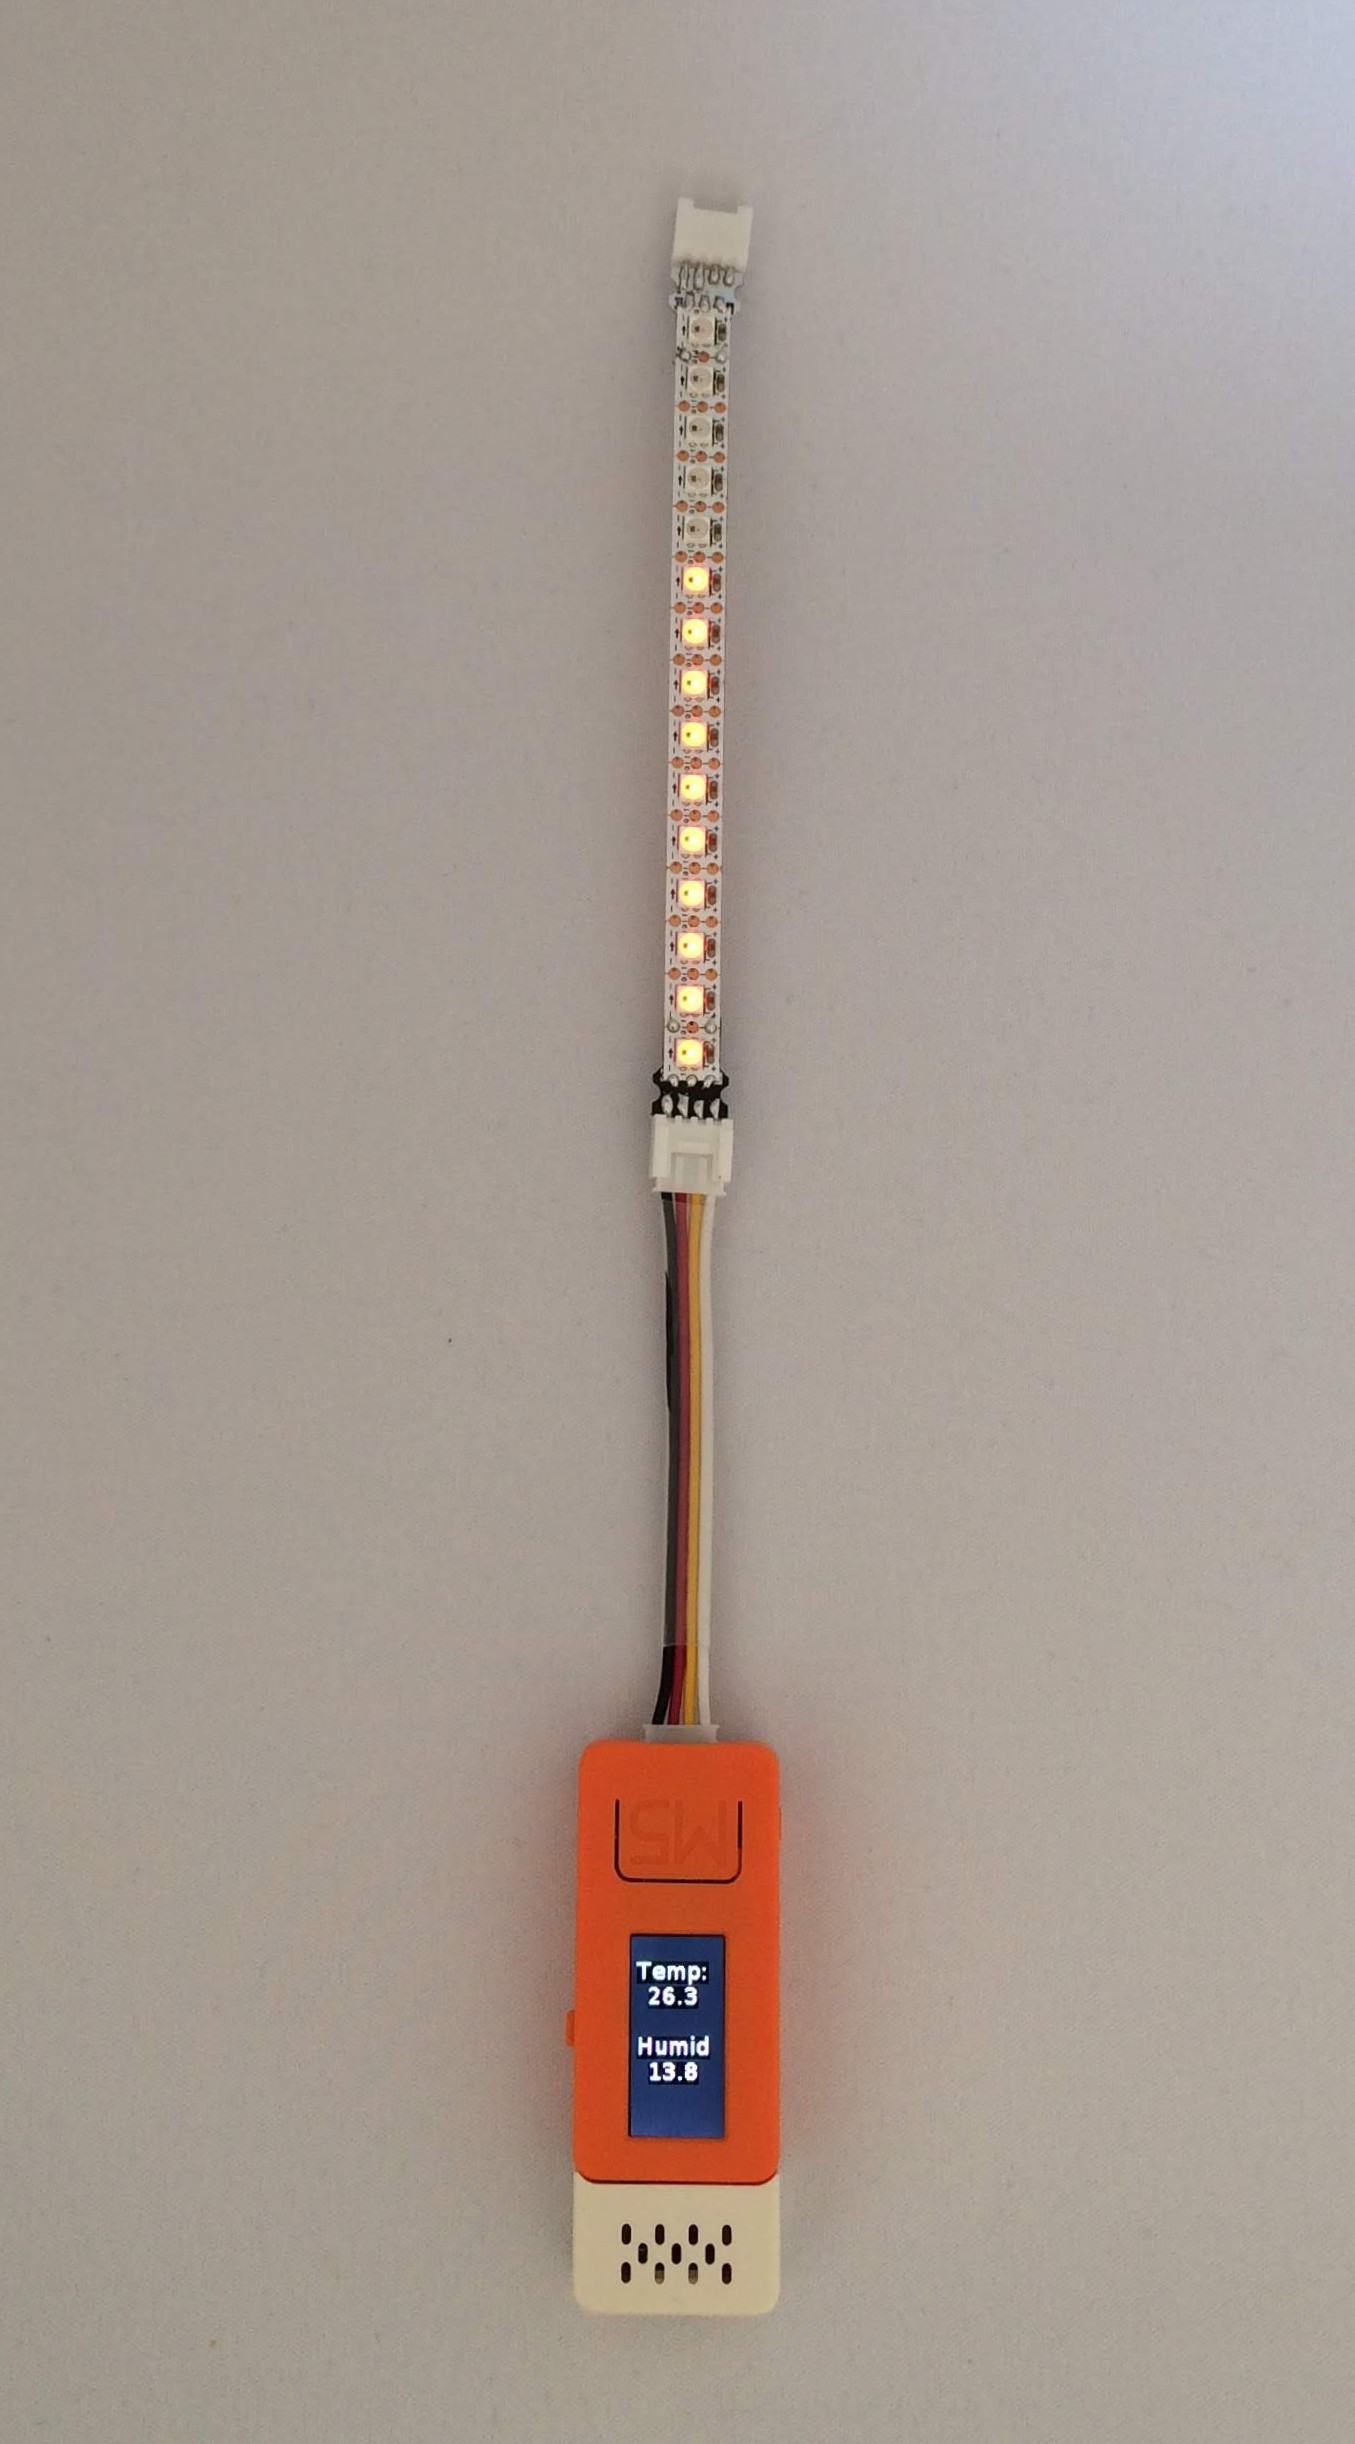 LEDテープの温度計